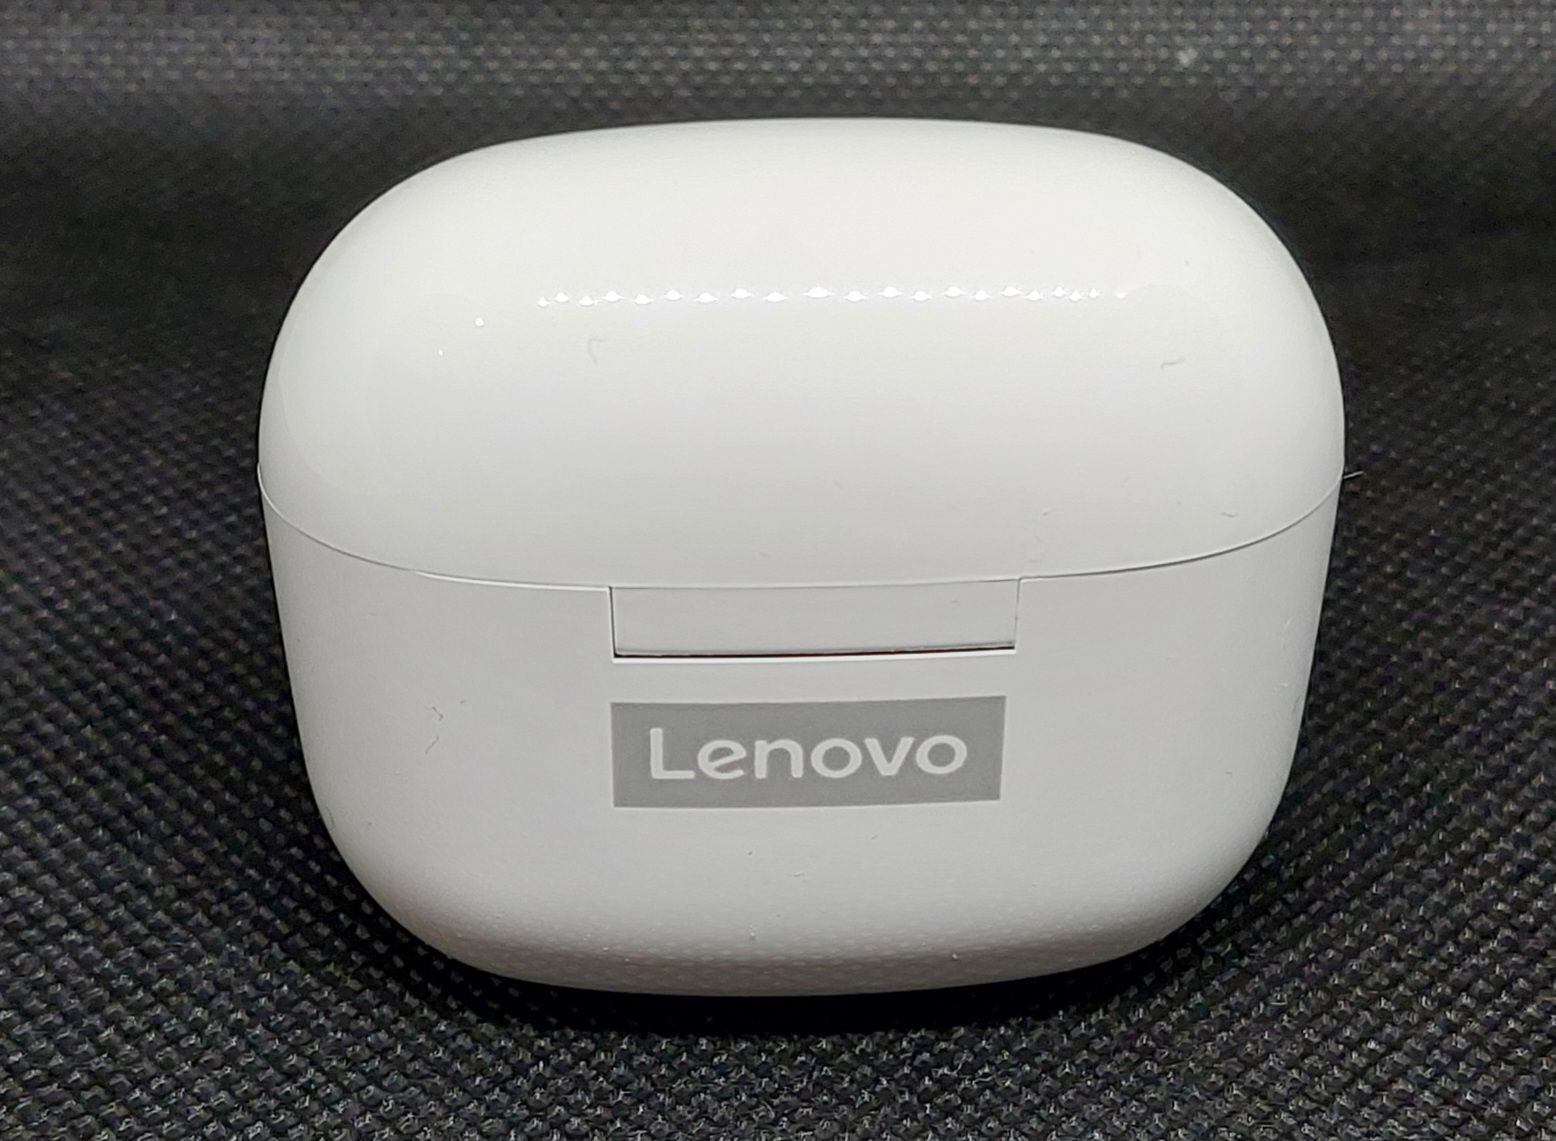 Słuchawki bezprzewodowe Lenovo LivePods LP40 pro - białe